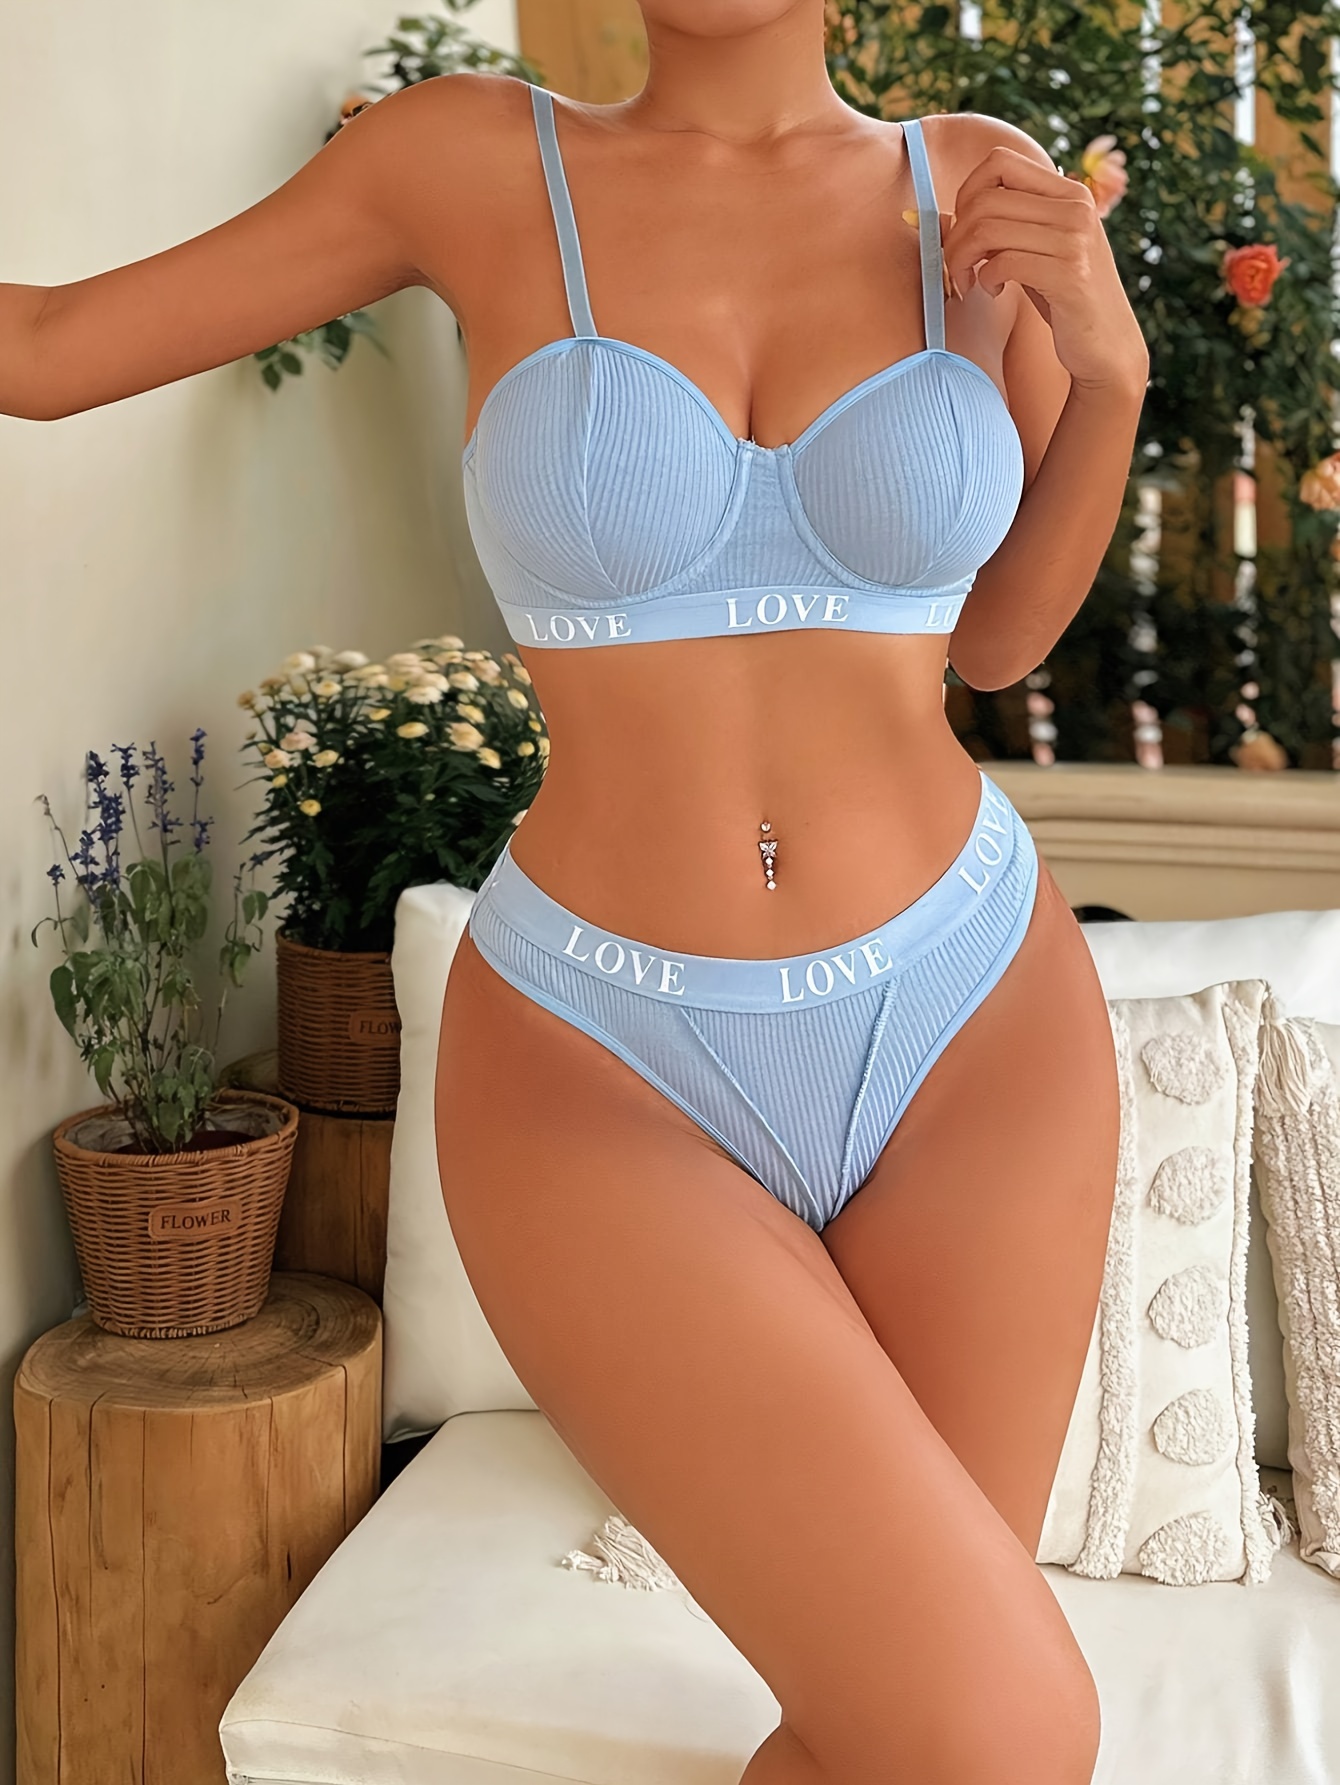 Sky blue bra - Women's lingerie